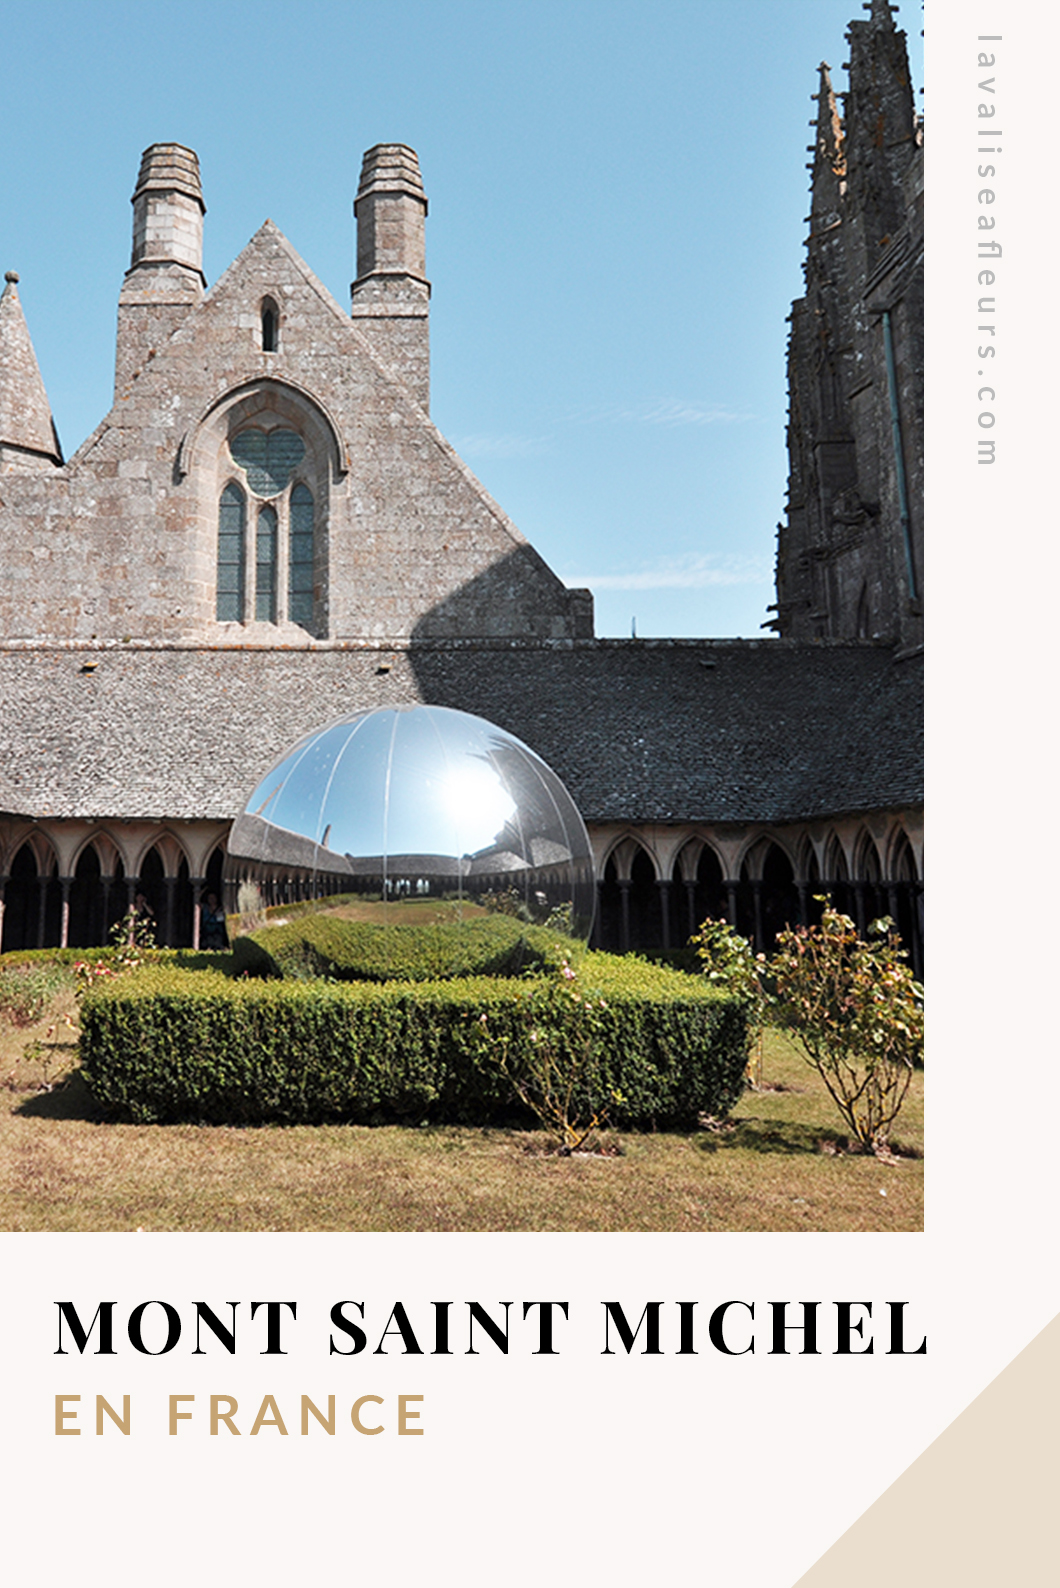 Découvrir le Mont Saint MIchel en France